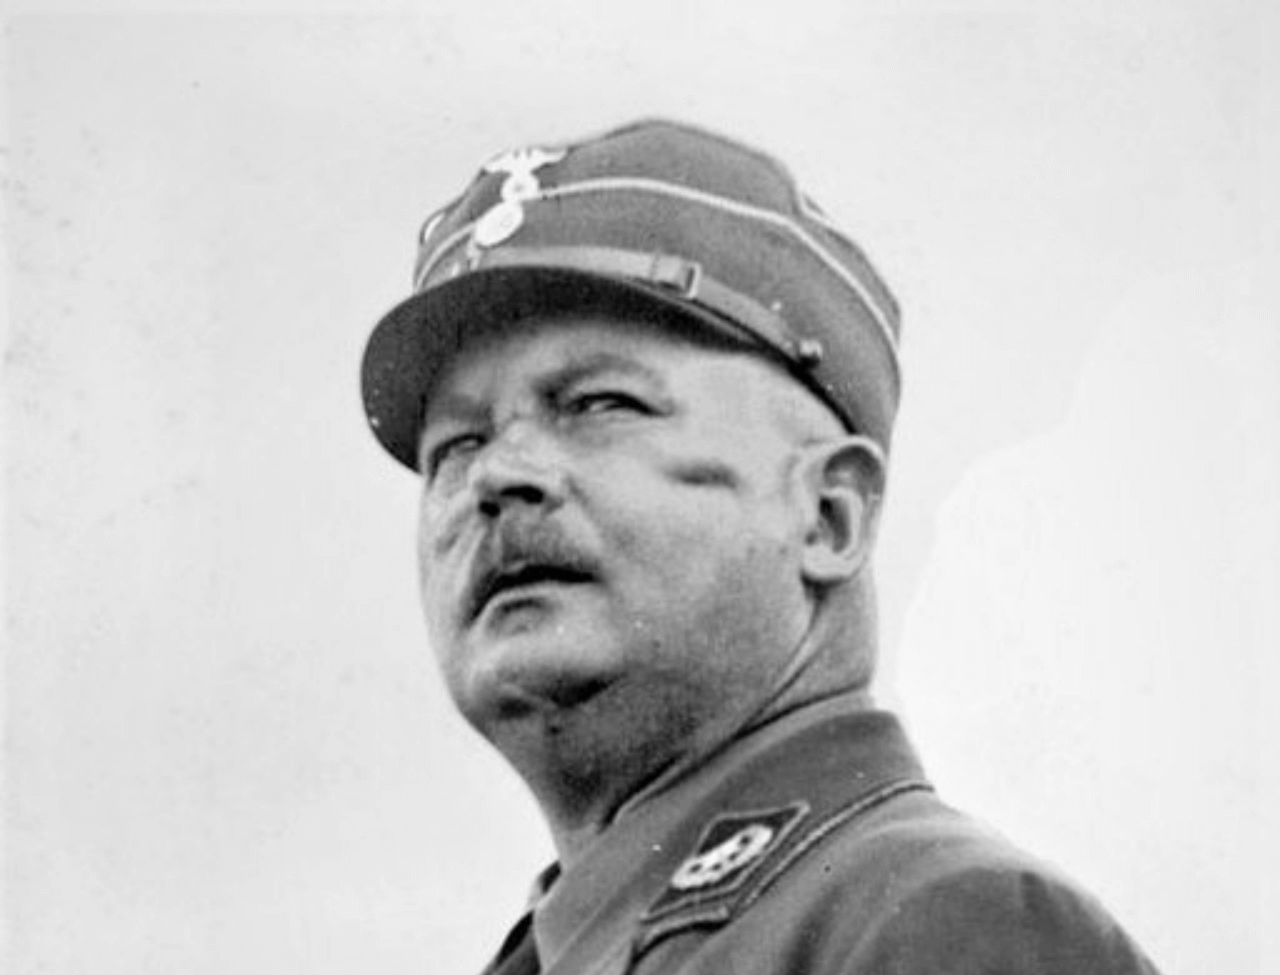 Ernst Rohm nazismo gay